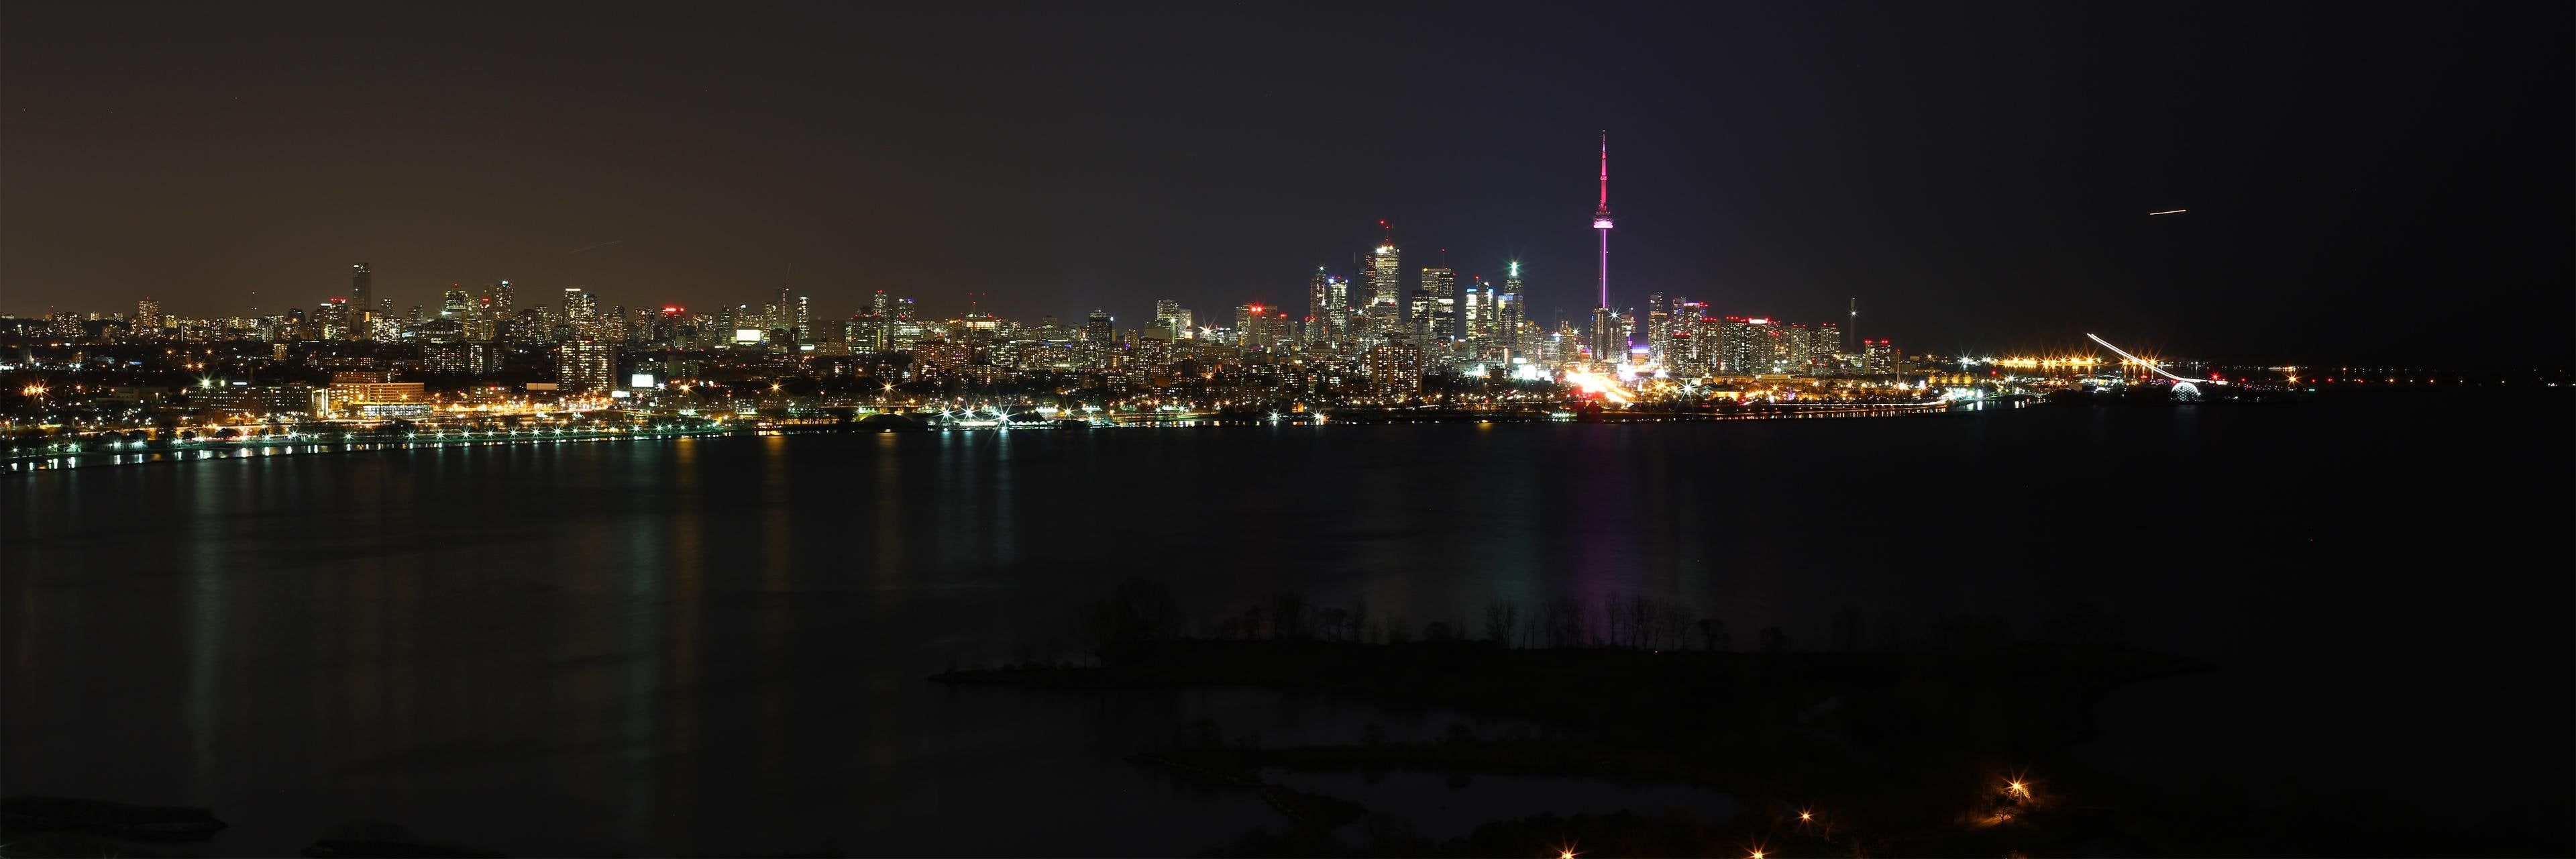 Toronto skyline panorama (dual monitor desktop size)